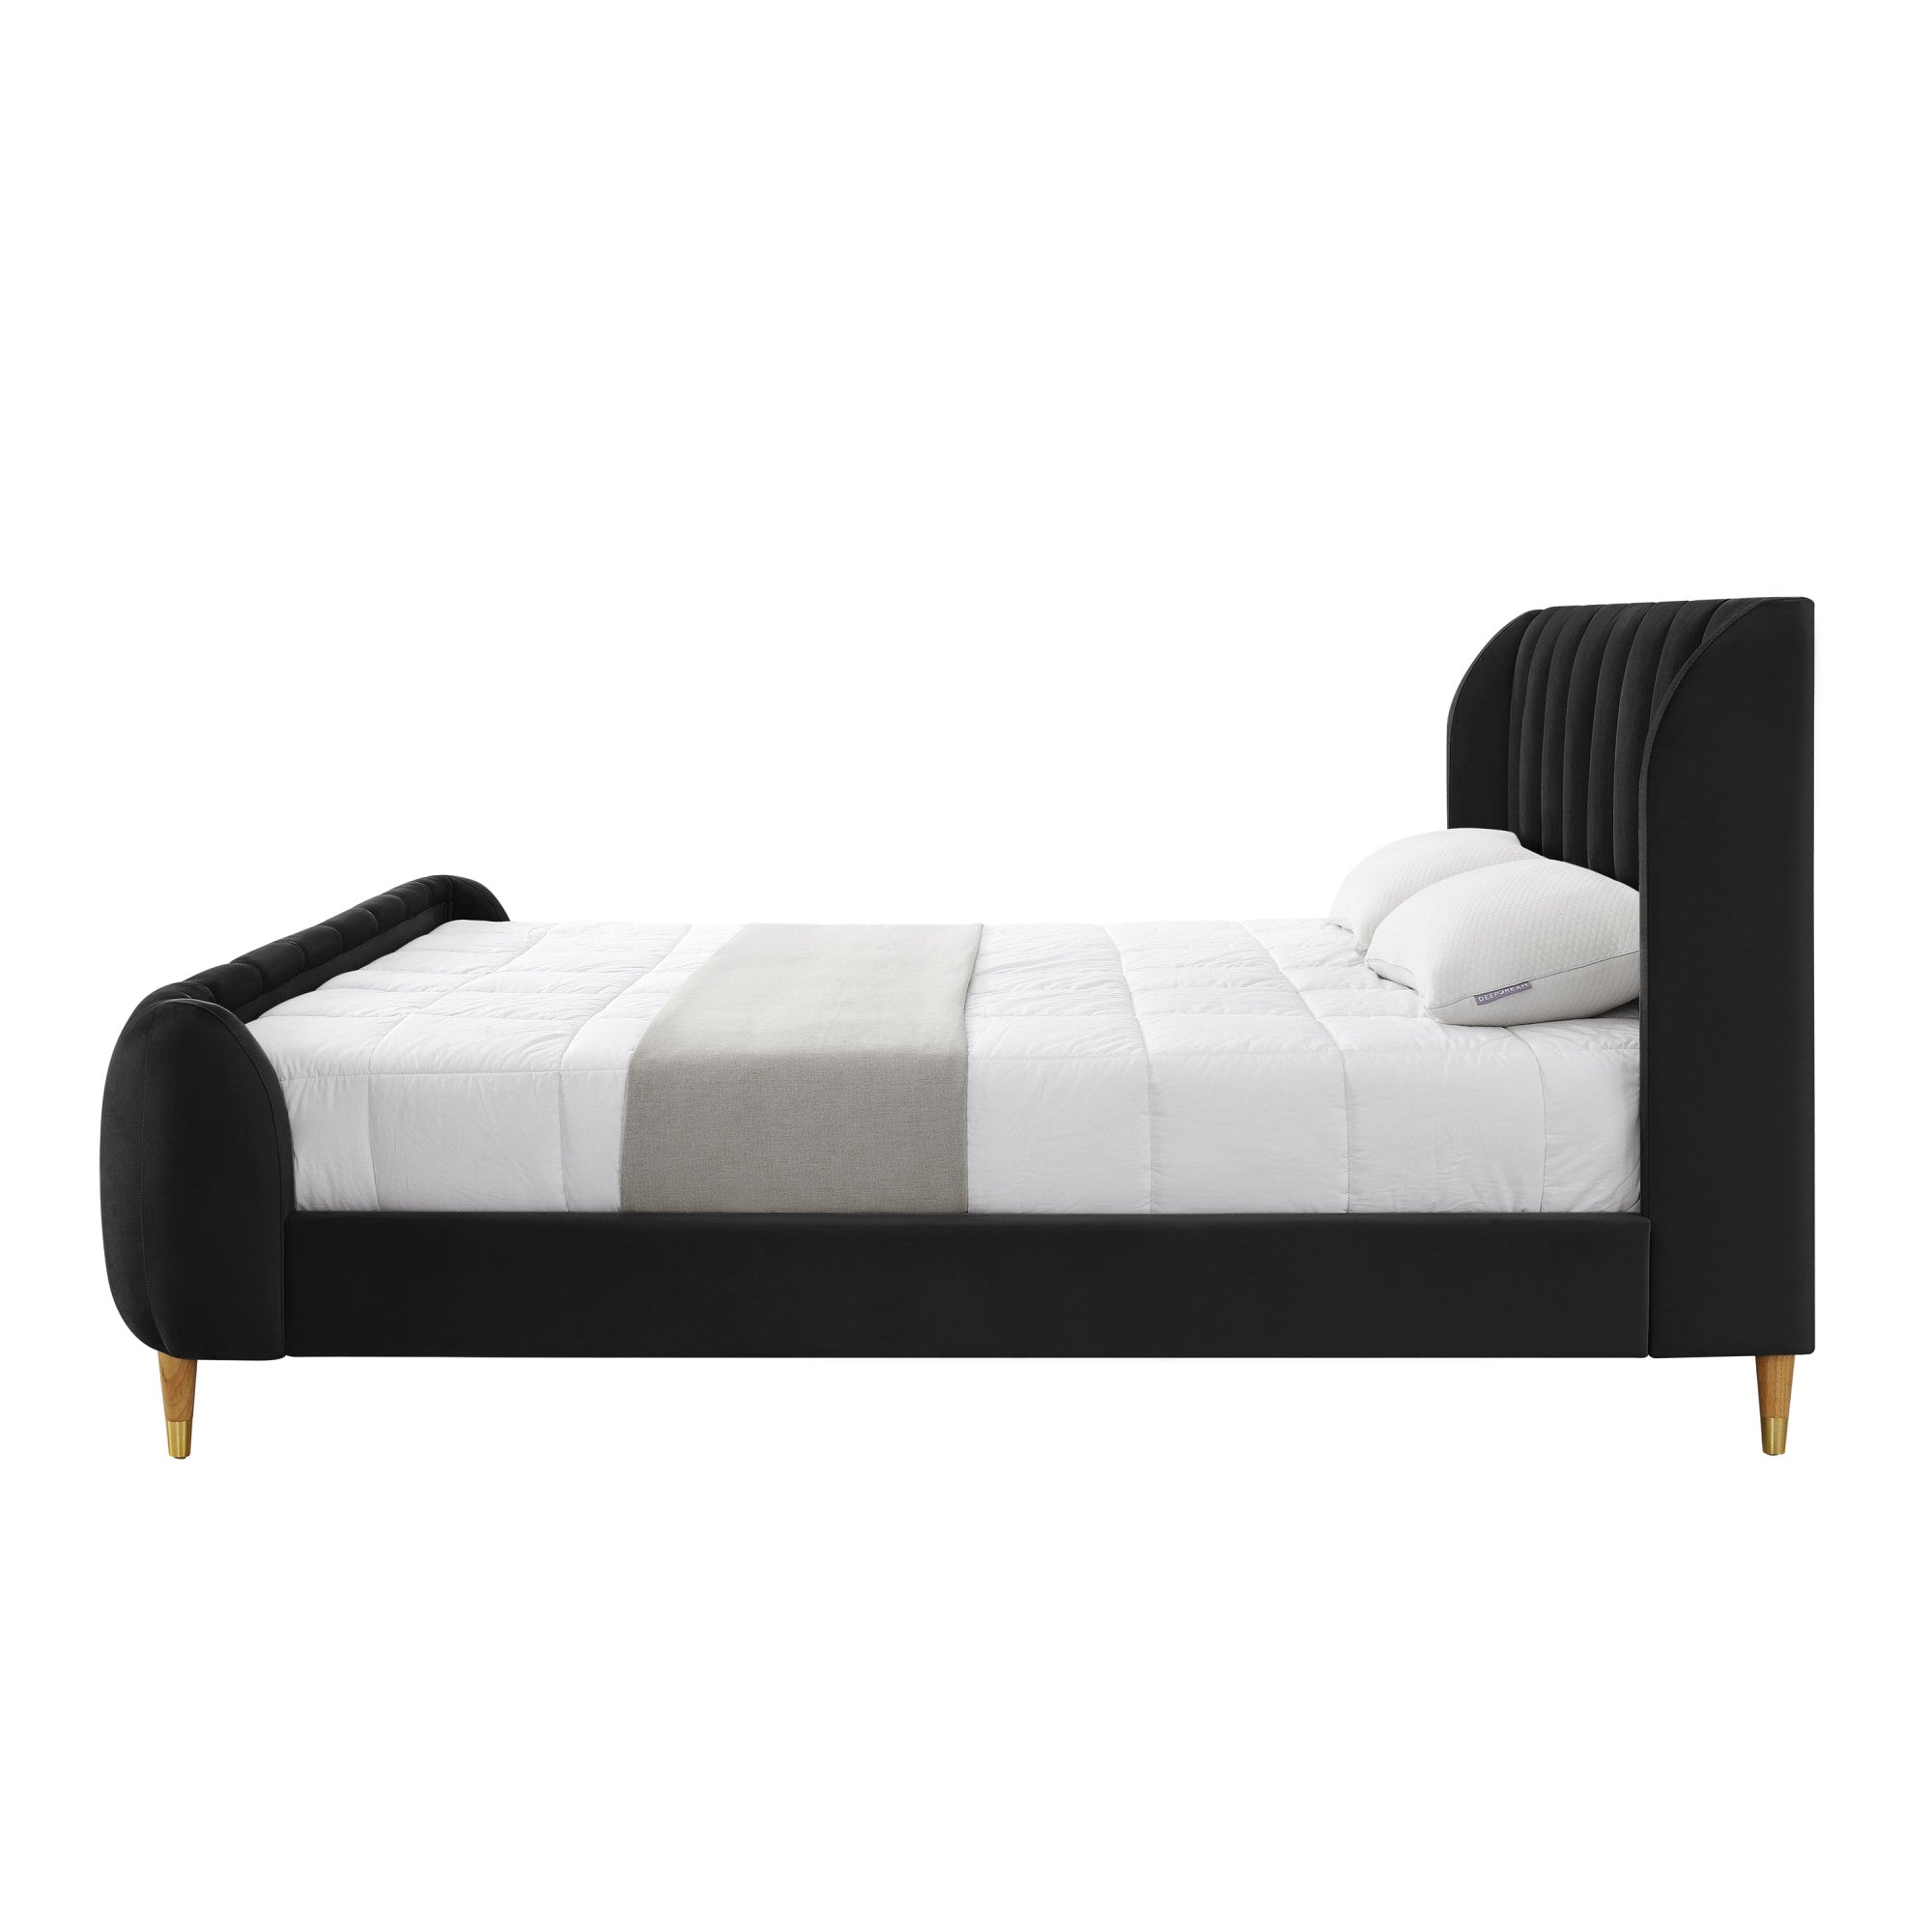 Black Solid Wood King Tufted Upholstered Velvet Bed